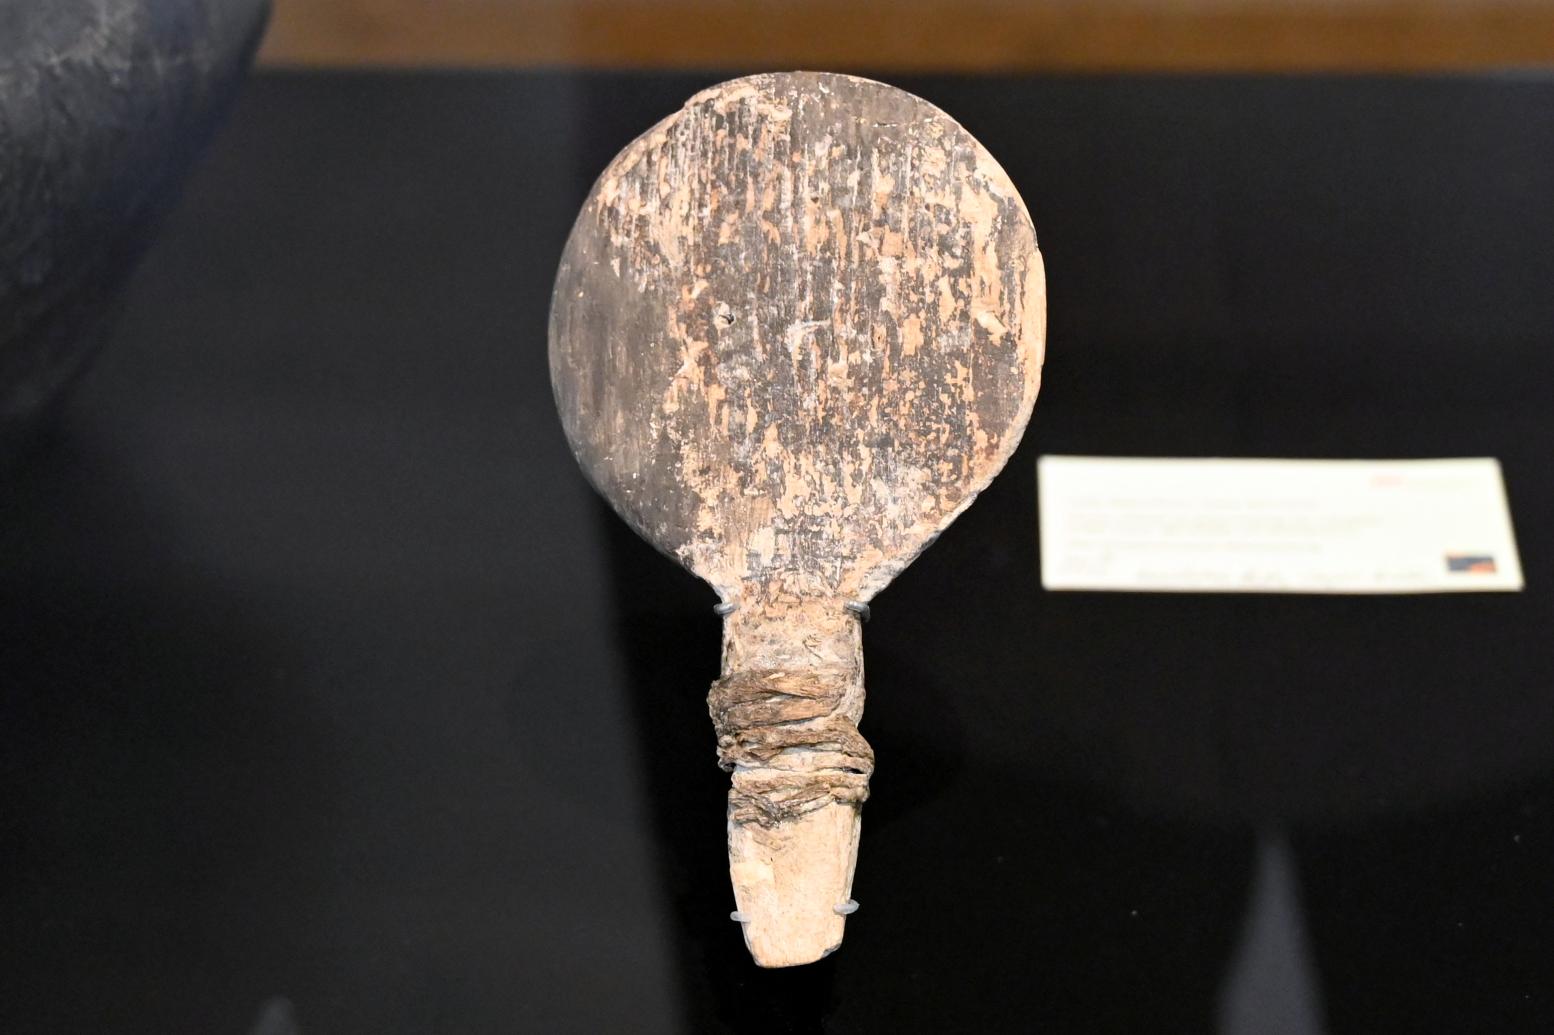 Holzgerät mit Bastumwicklung am Stiel, Neolithikum (Jungsteinzeit), 5500 - 1700 v. Chr., 4100 - 3800 v. Chr.